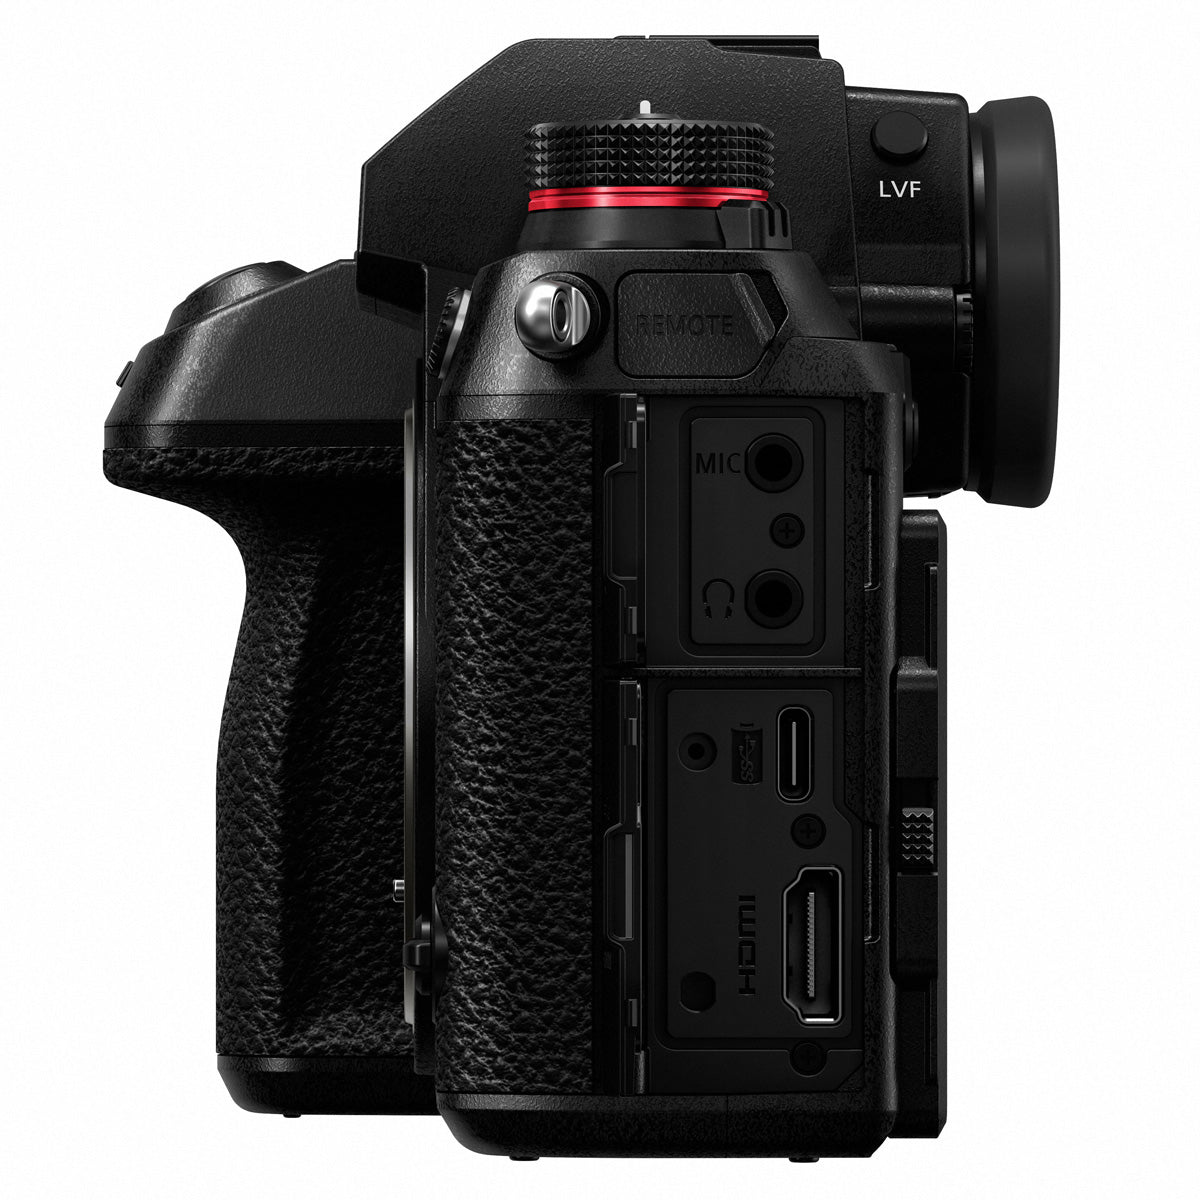 Panasonic Lumix S1 Mirrorless Camera Body with 24-105mm f/4 Lens